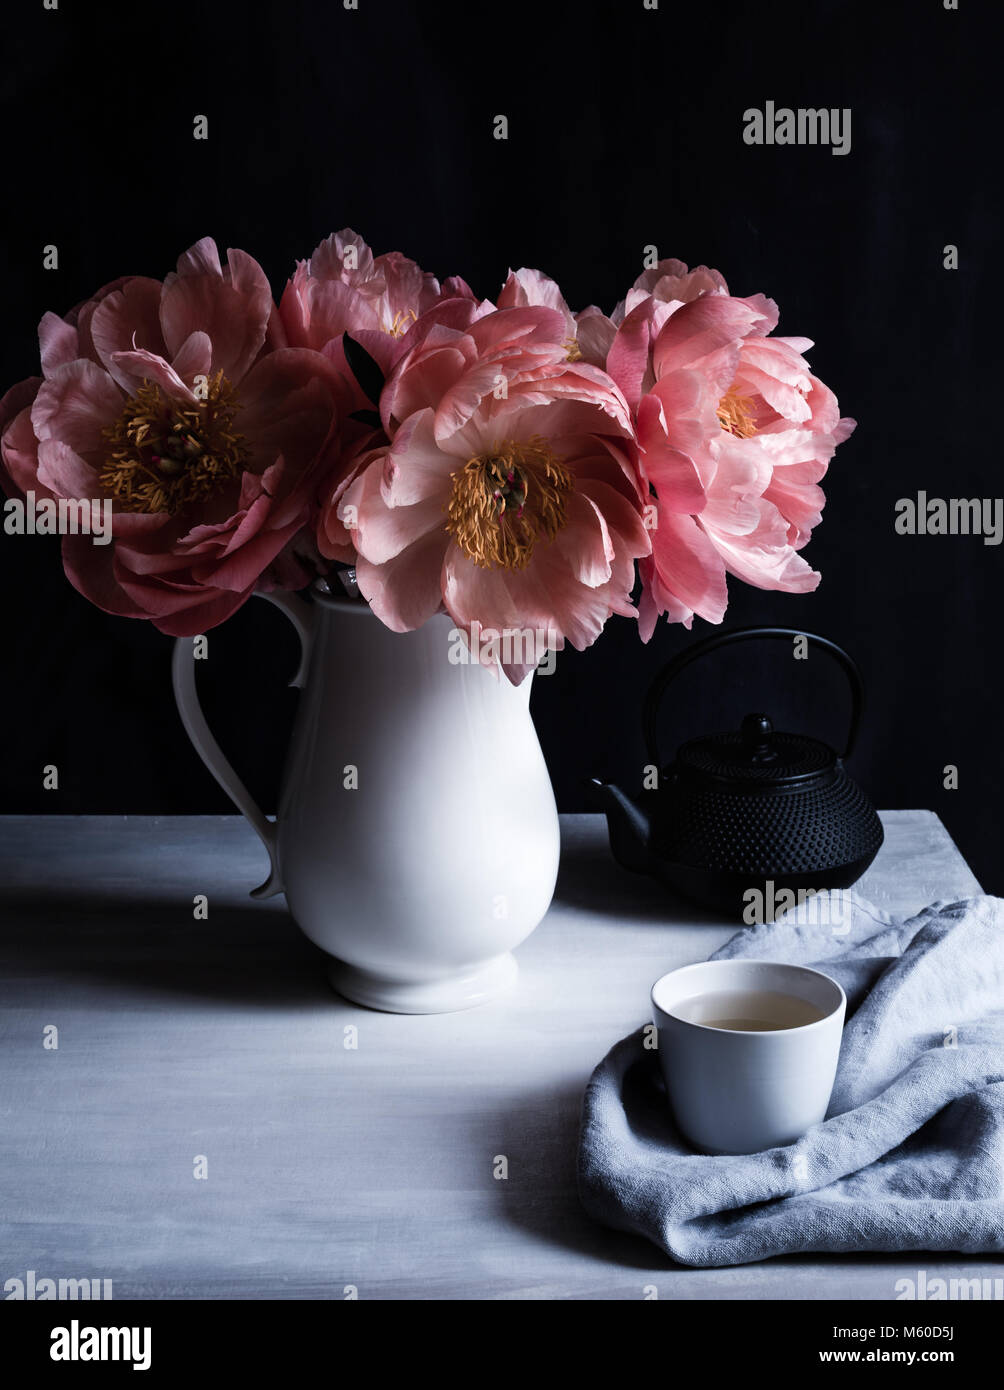 Encanto Coral peonías en flor, en una jarra blanca sobre la mesa con taza y tetera tetsublin, fondo oscuro, rodada en luz natural Foto de stock